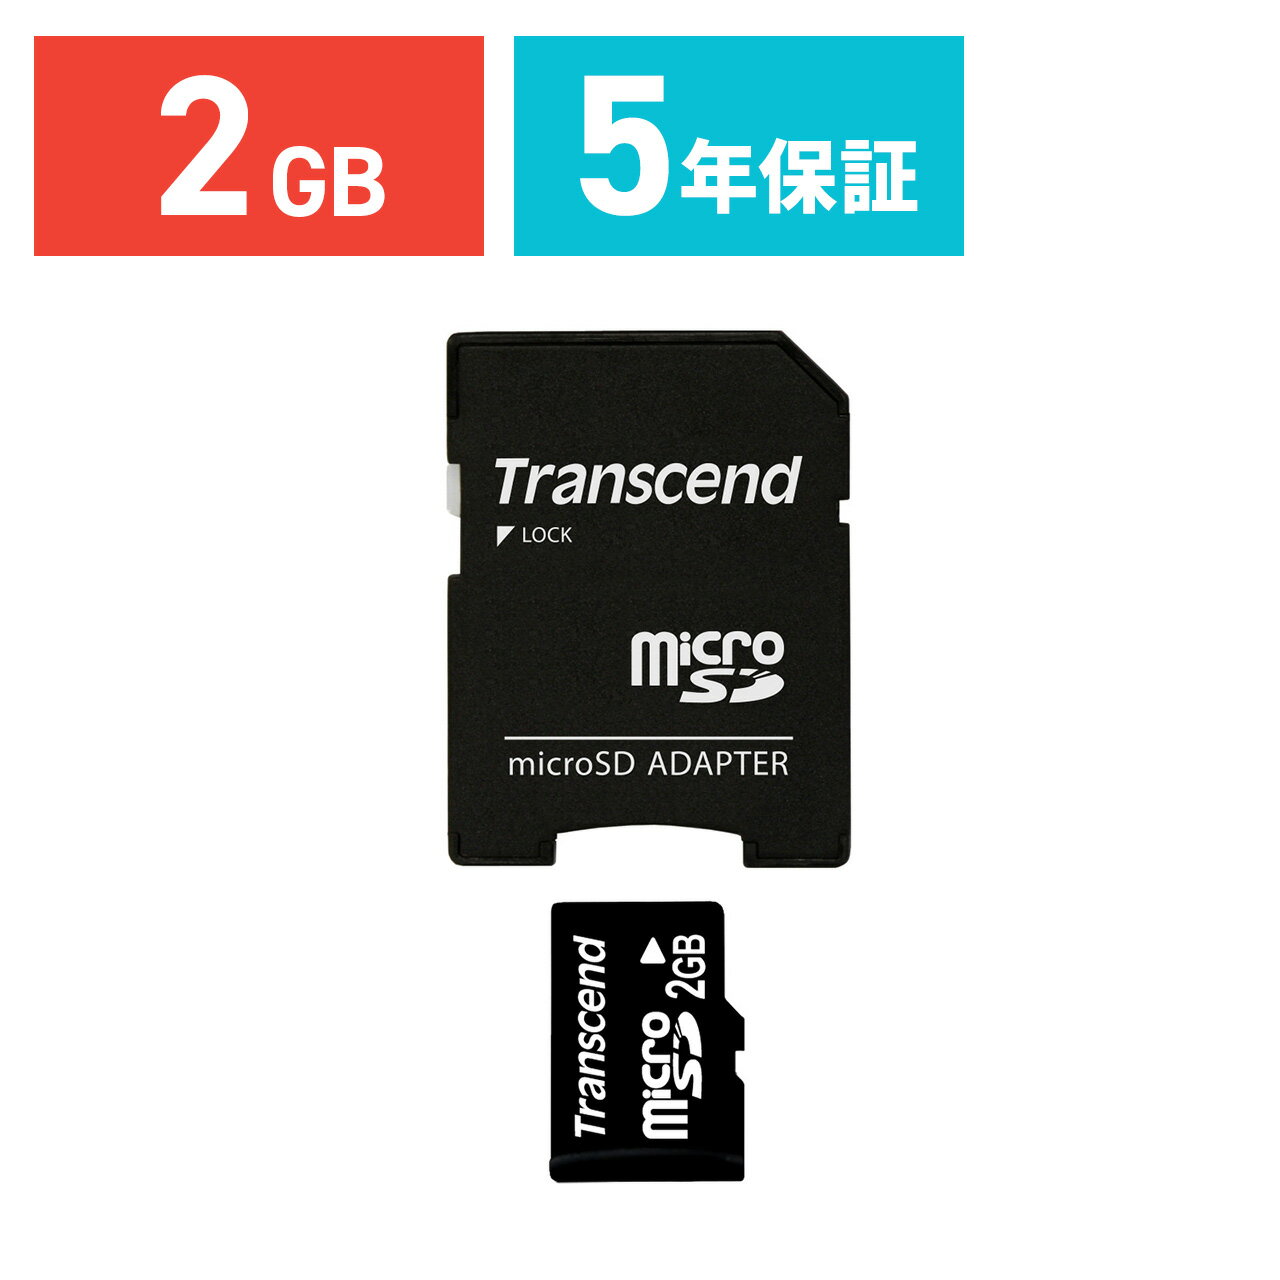 y5/15II100|CgҌ zTranscend microSDJ[h 2GB }CNSD X}z SD w 